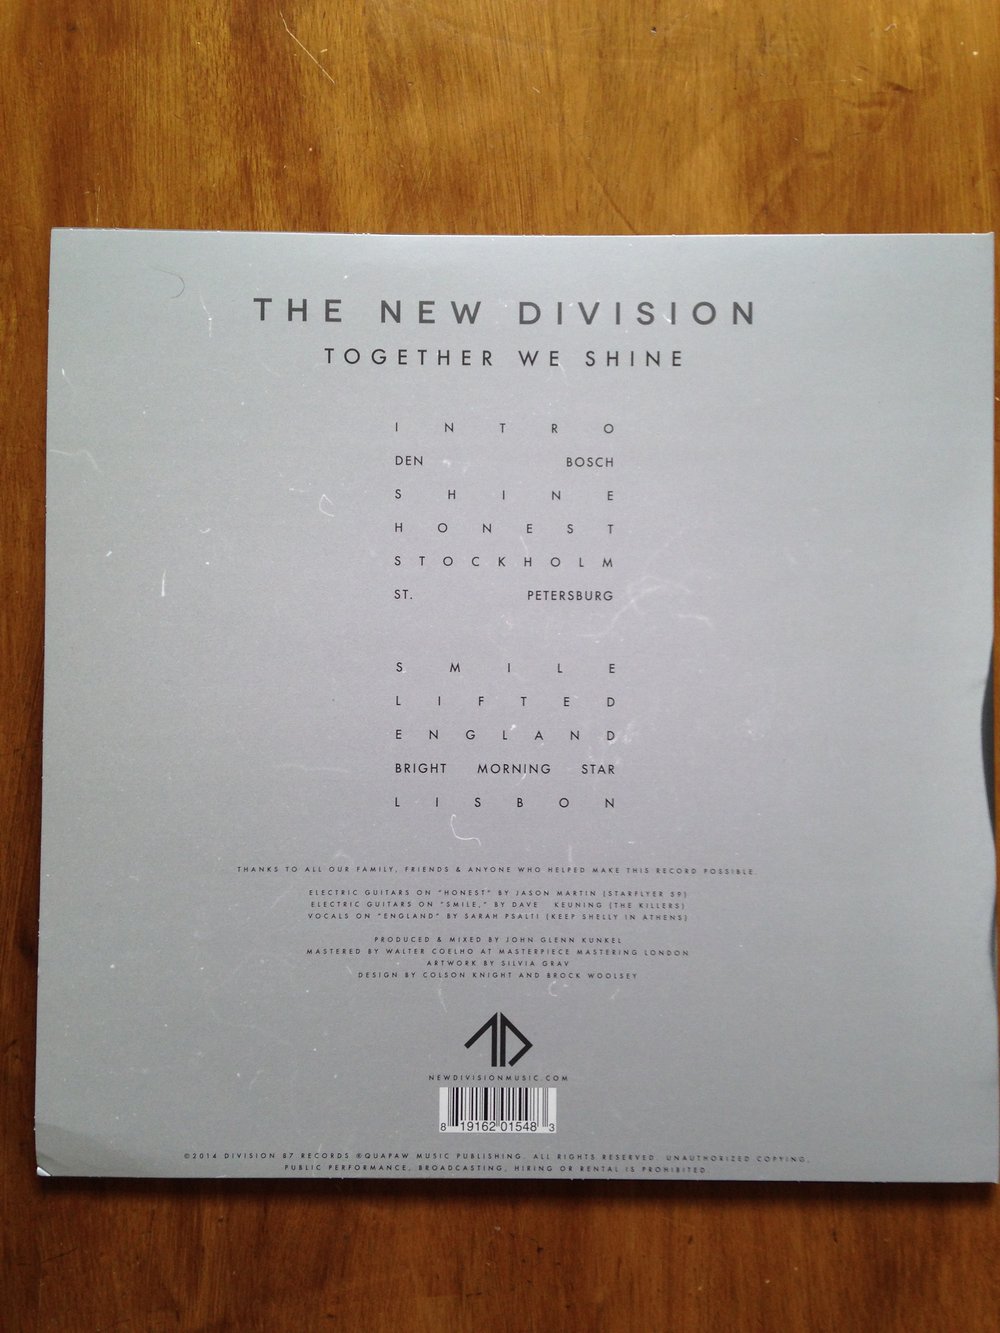 Together We Shine - Vinyl (Colored) + Digital Download